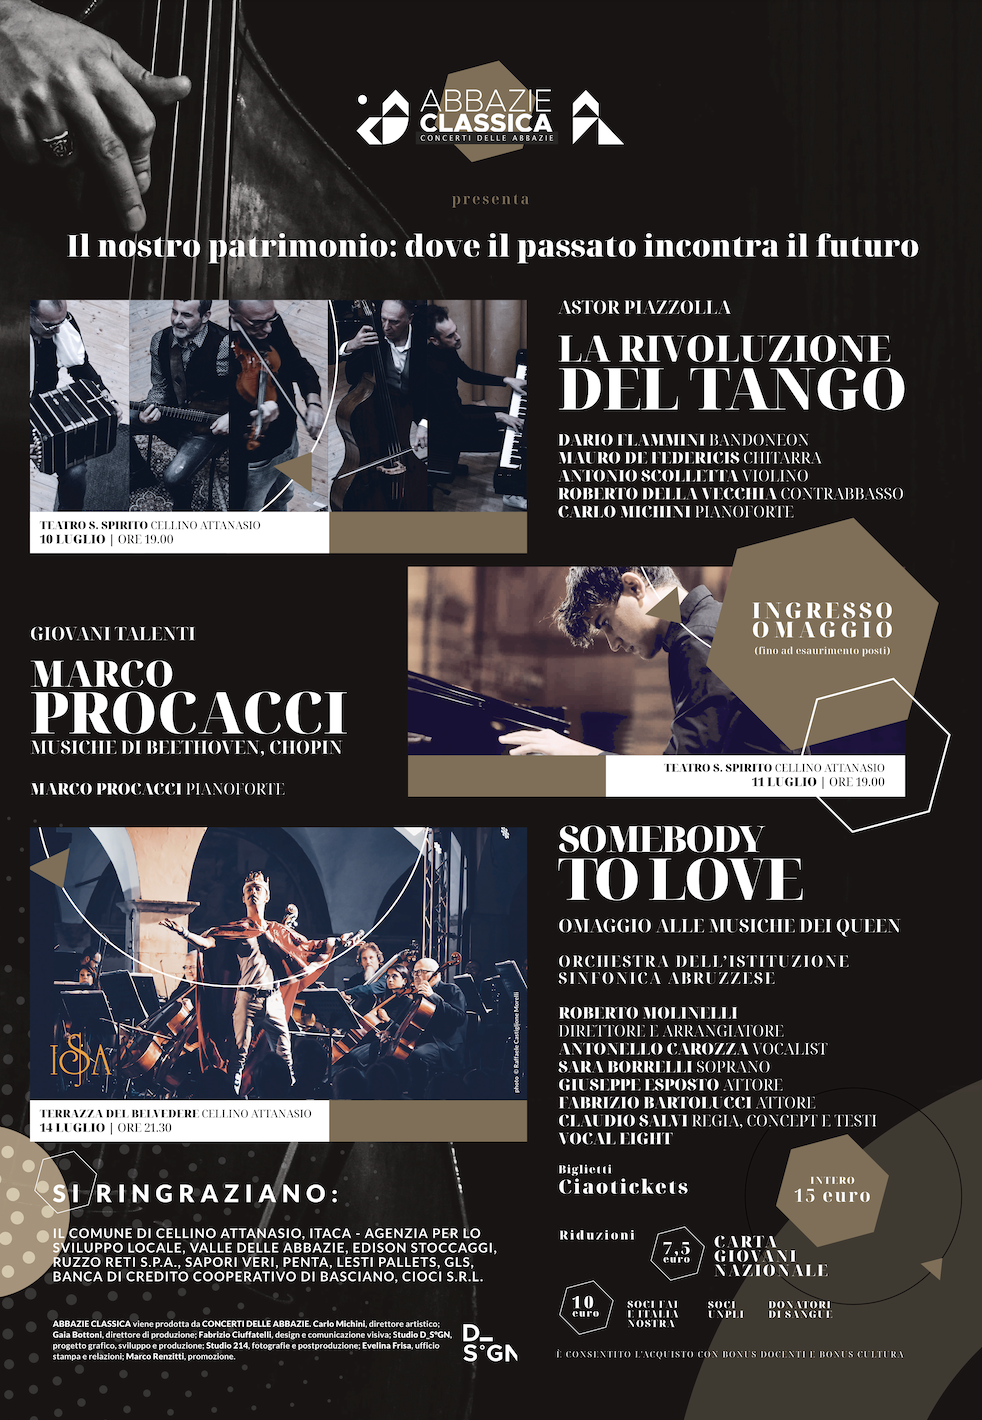 Al via il Festival “Concerti delle Abbazie”: 10,11,14 luglio a Cellino Attanasio